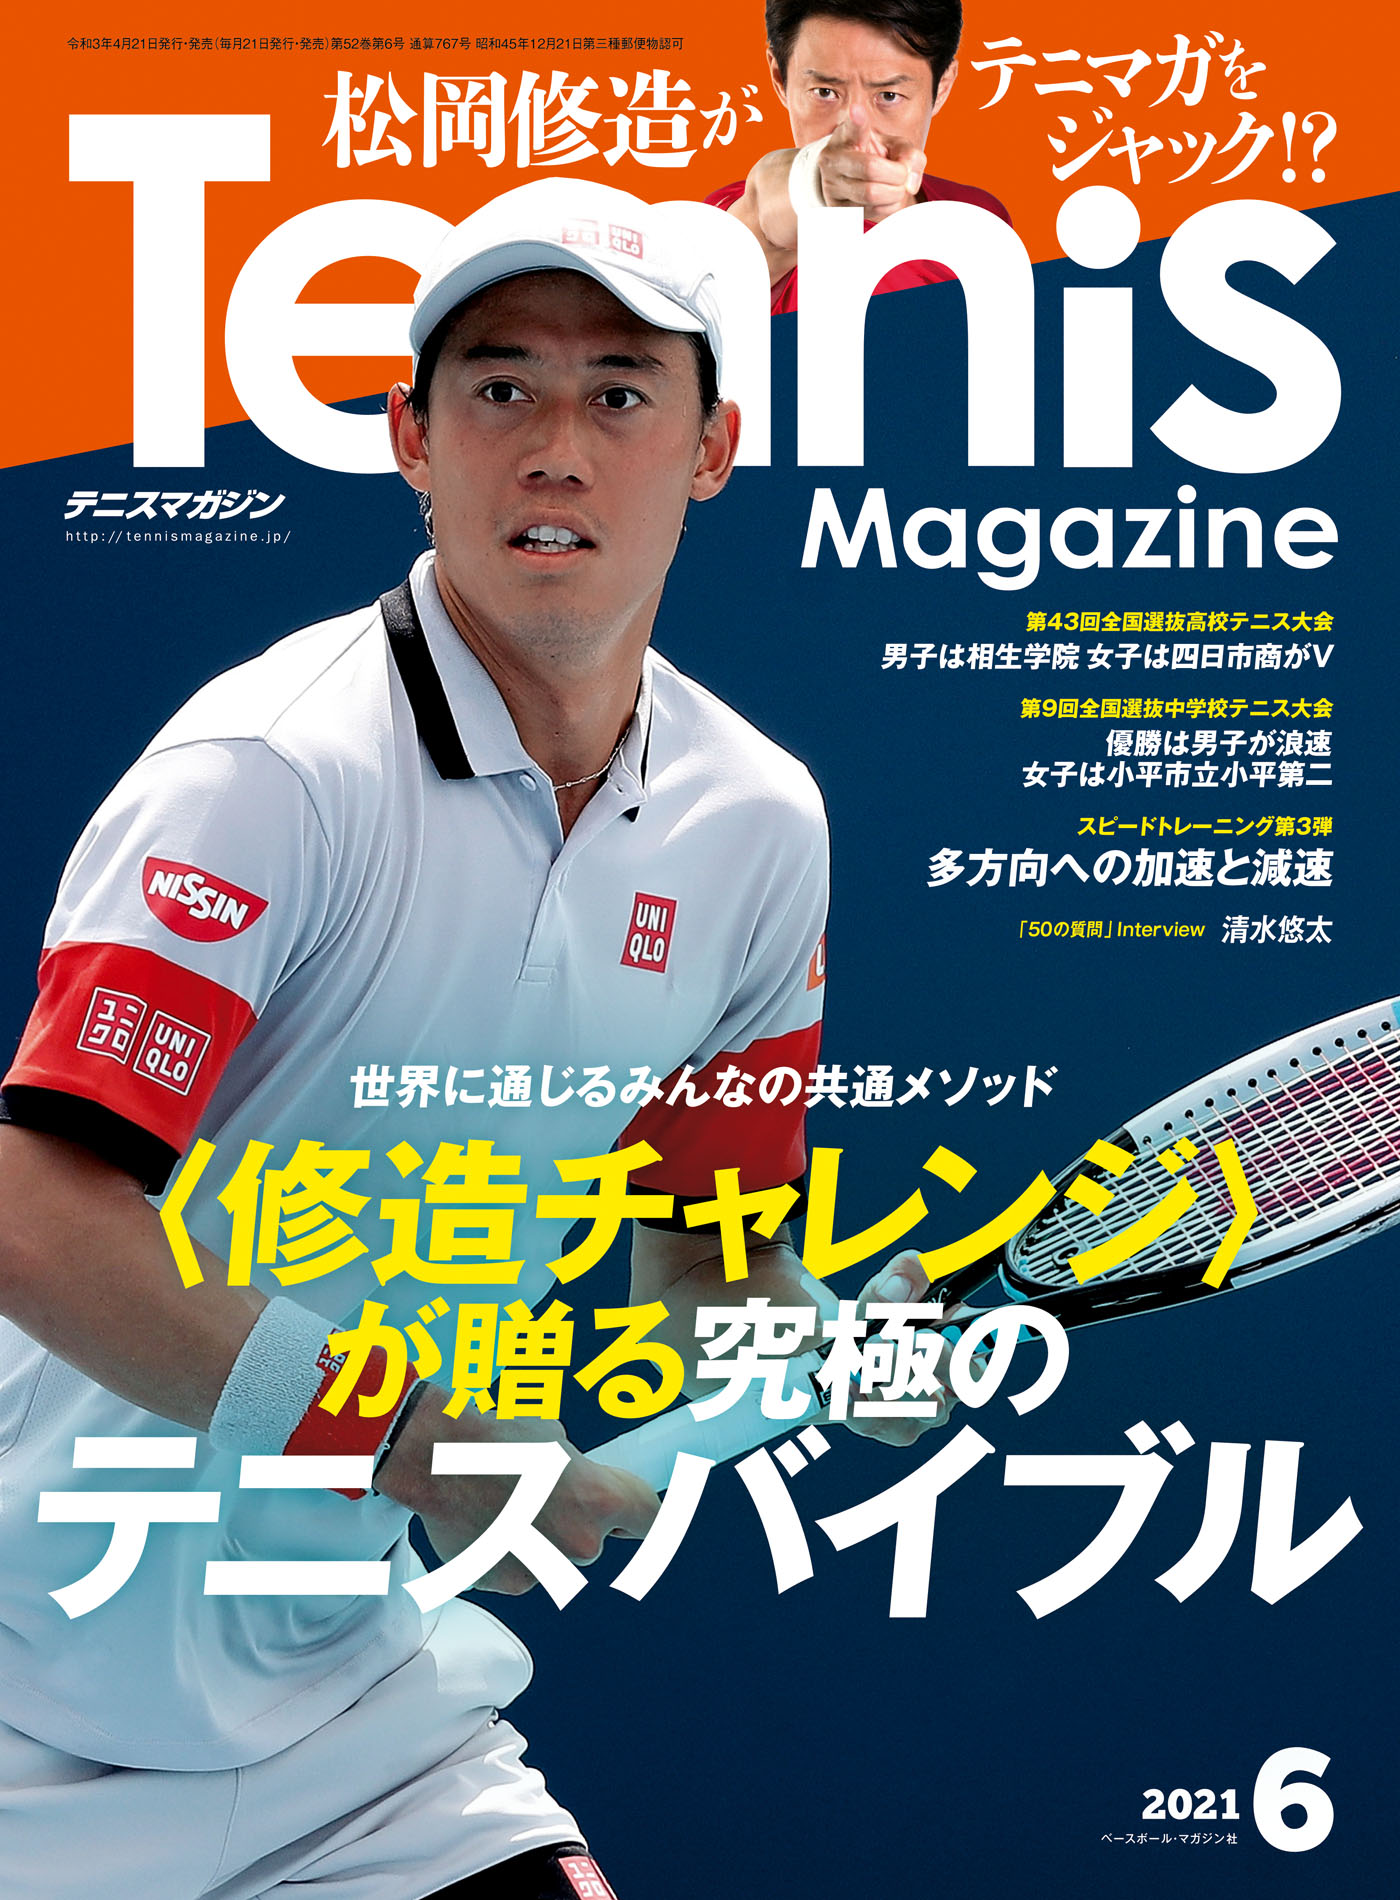 Tennis Magazine 2015 1月号